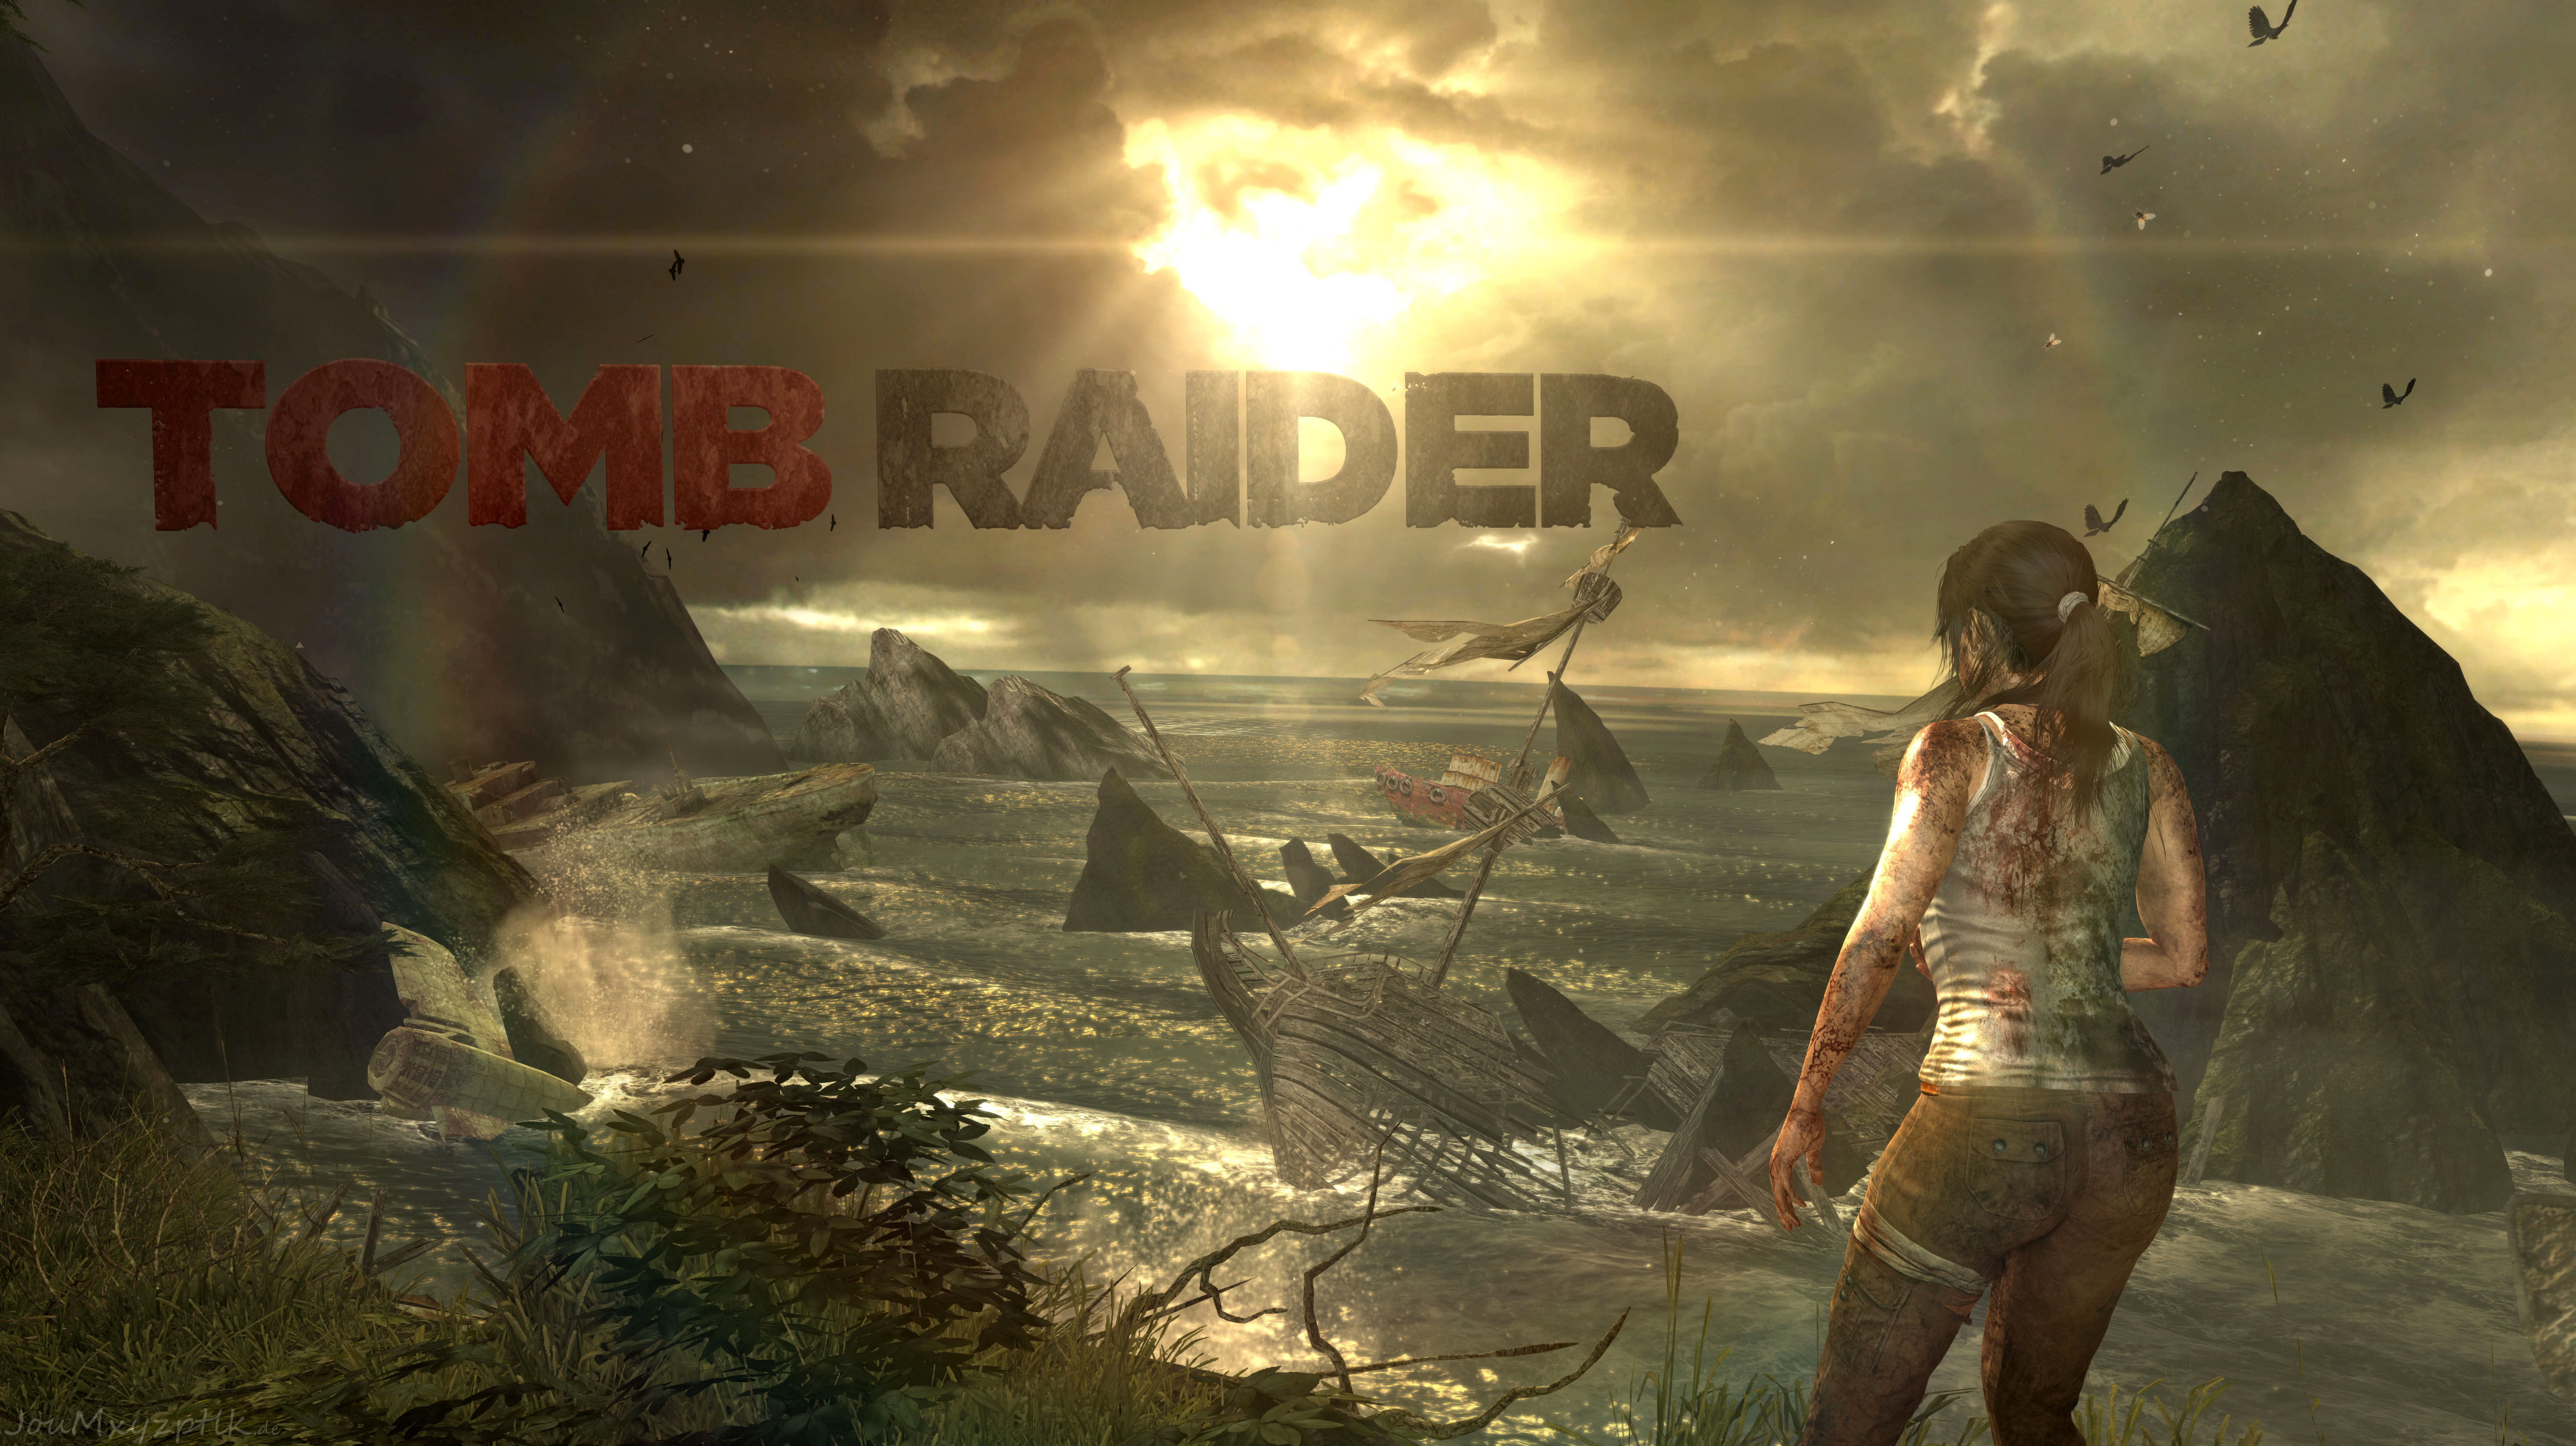 Где проходили игры 2016. Томб Райдер игра 2013. Tomb Raider: игра новая 2013. Томб Райдер 11.